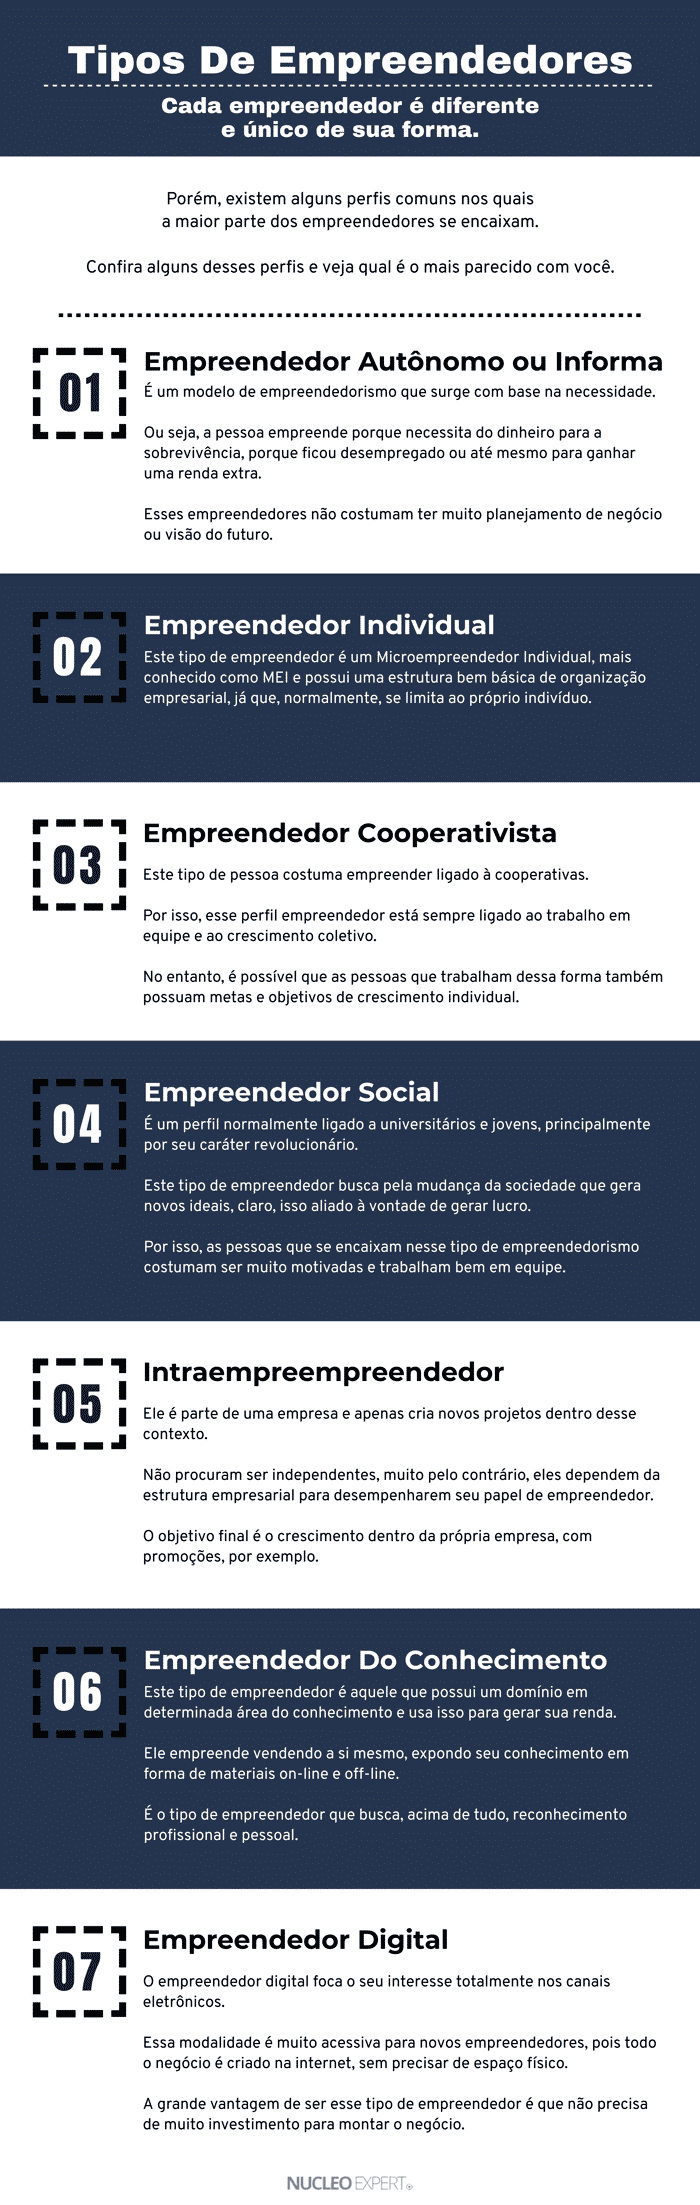 Tipos de Empreendedores